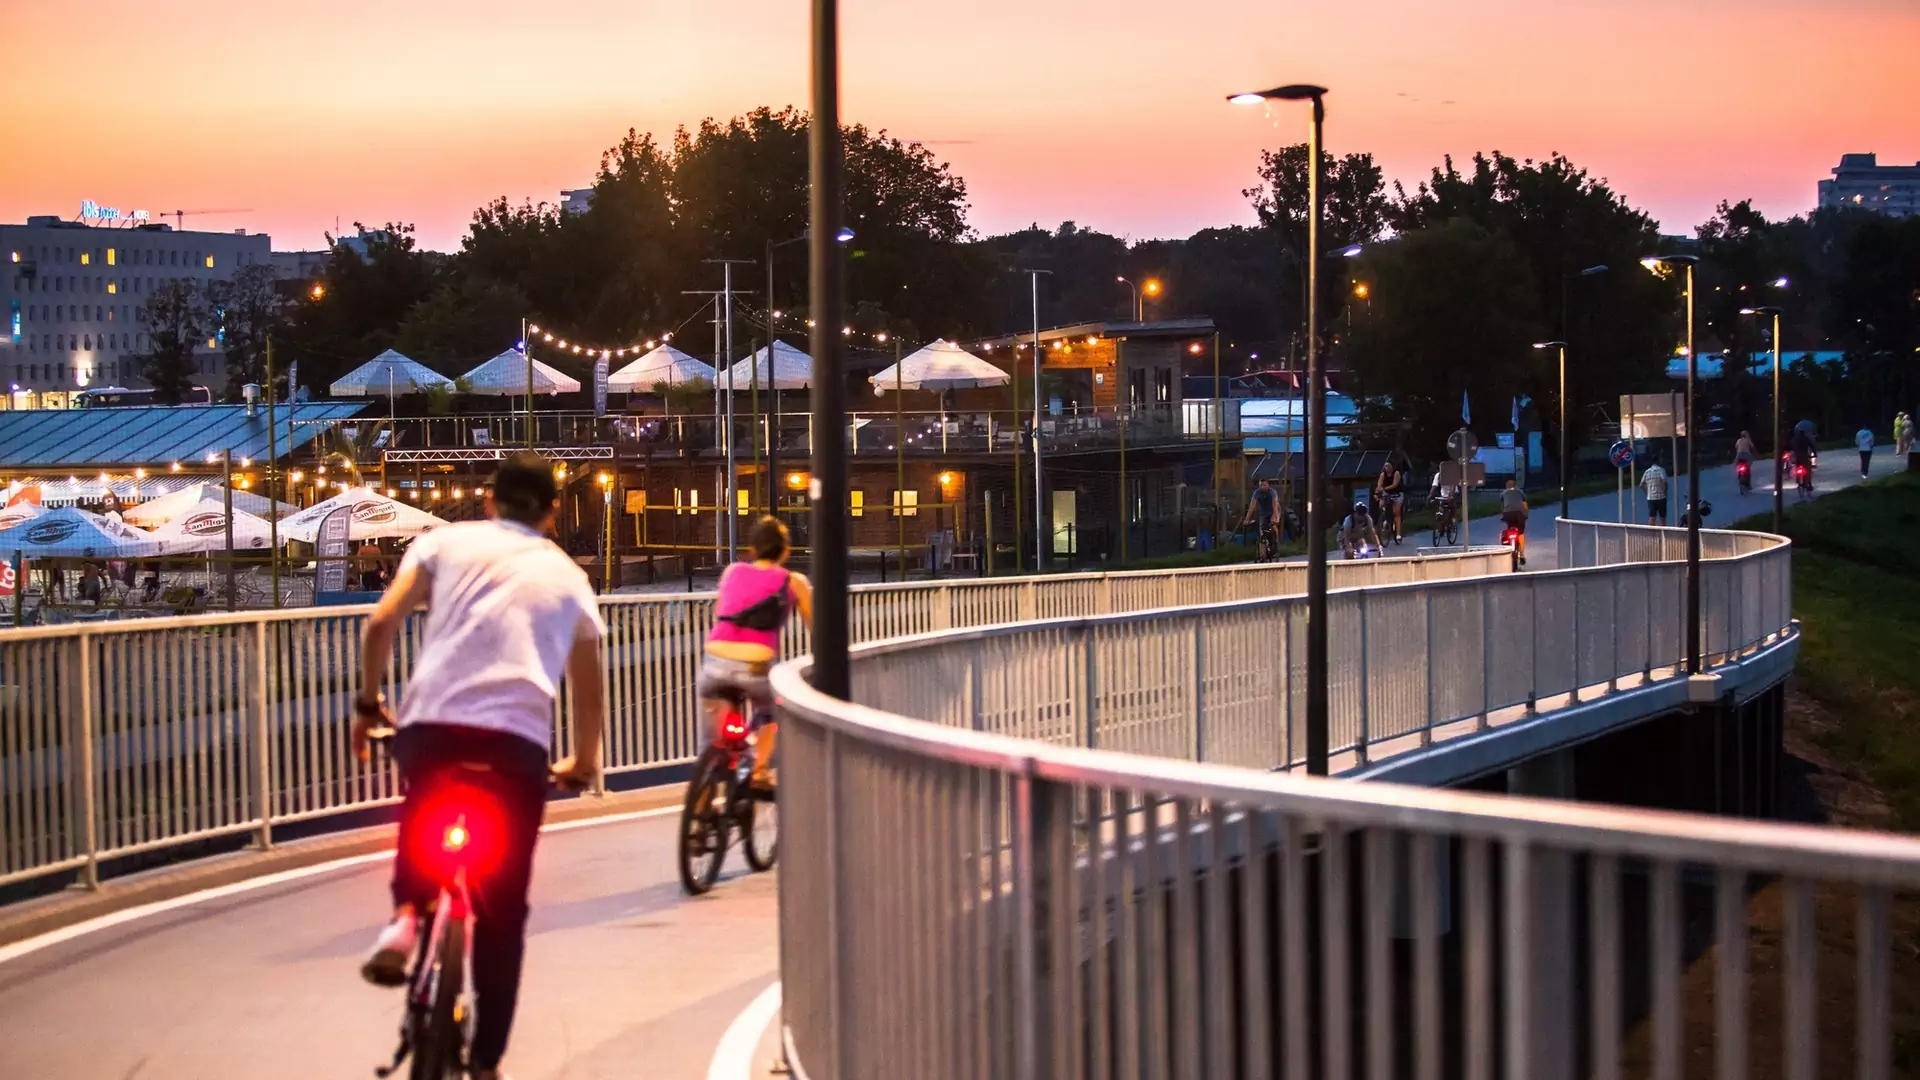 Radna chce progów zwalniających dla rowerów. Czy to dobry pomysł?